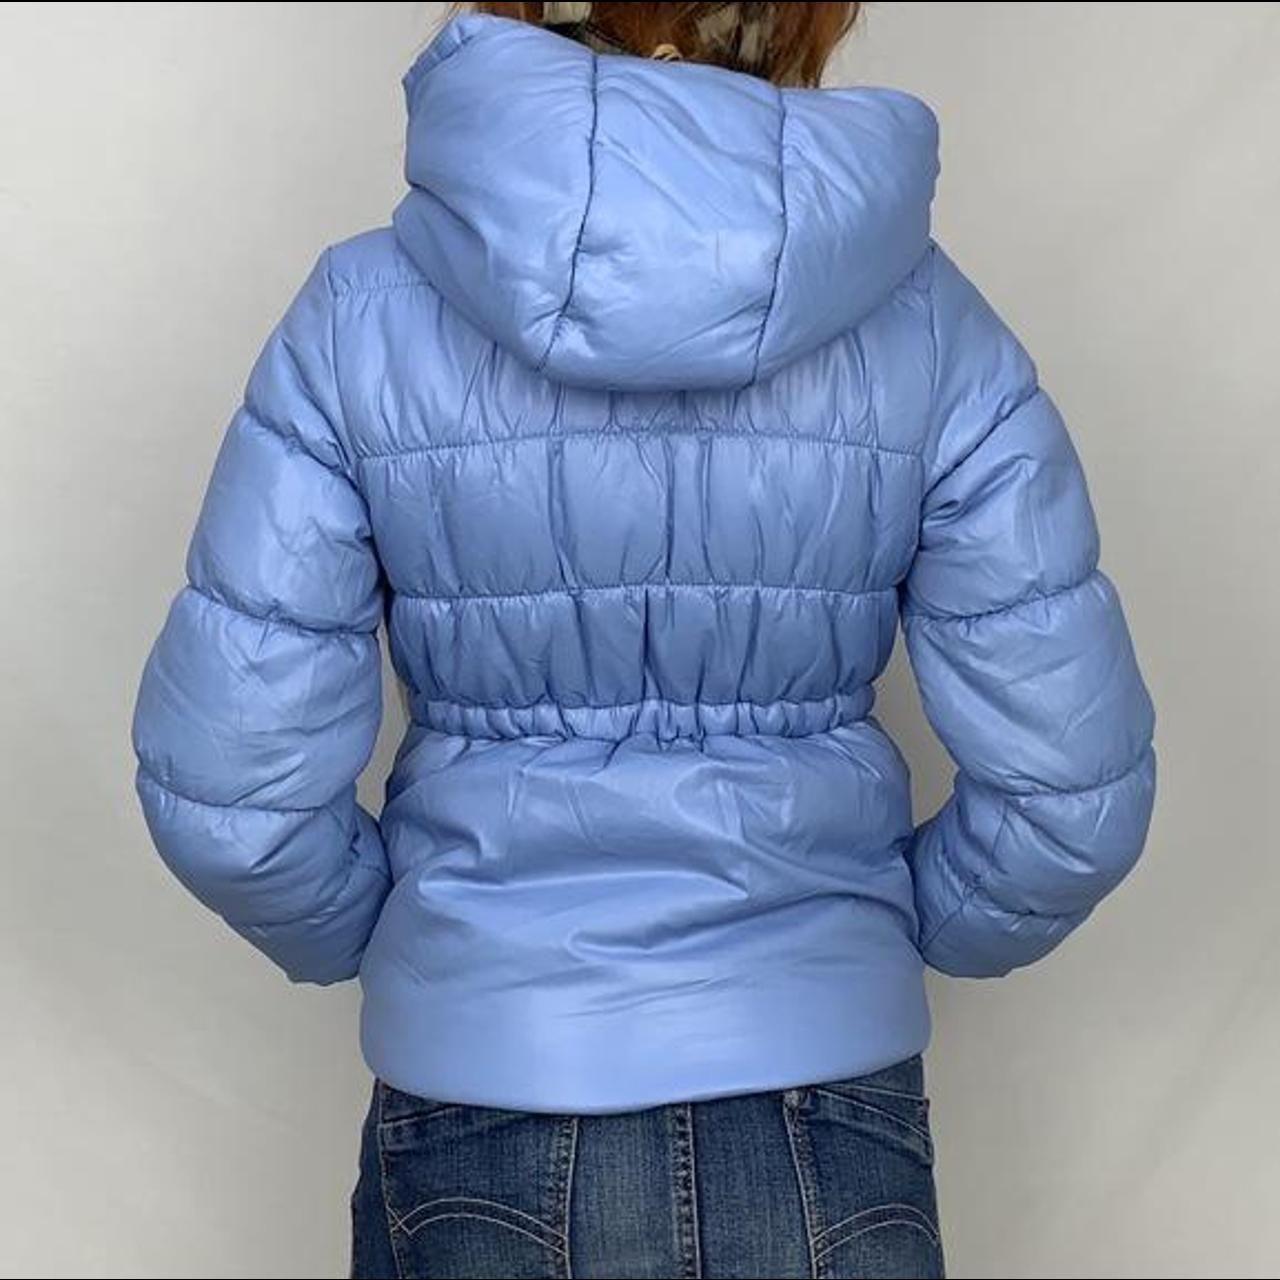 Light blue zip up puffer jacket with hood. Cinches... - Depop